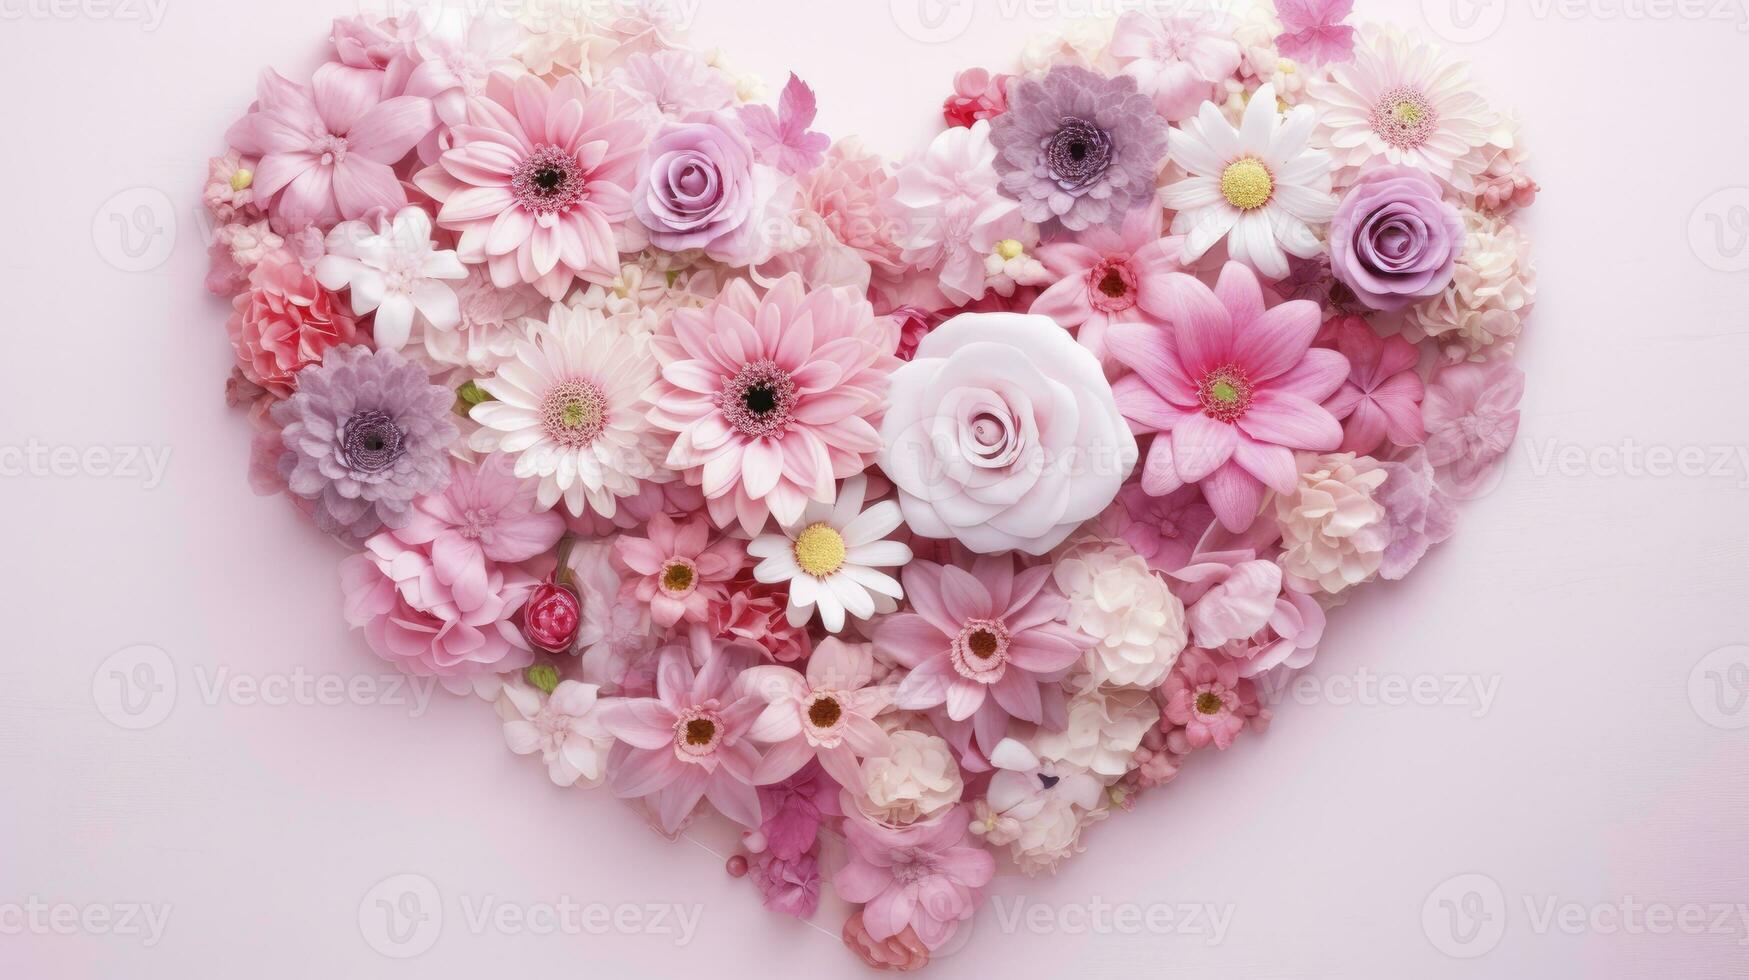 ai generiert Herz gestalten gemacht von Rosa Blumen gegen Pastell- Rosa Hintergrund foto